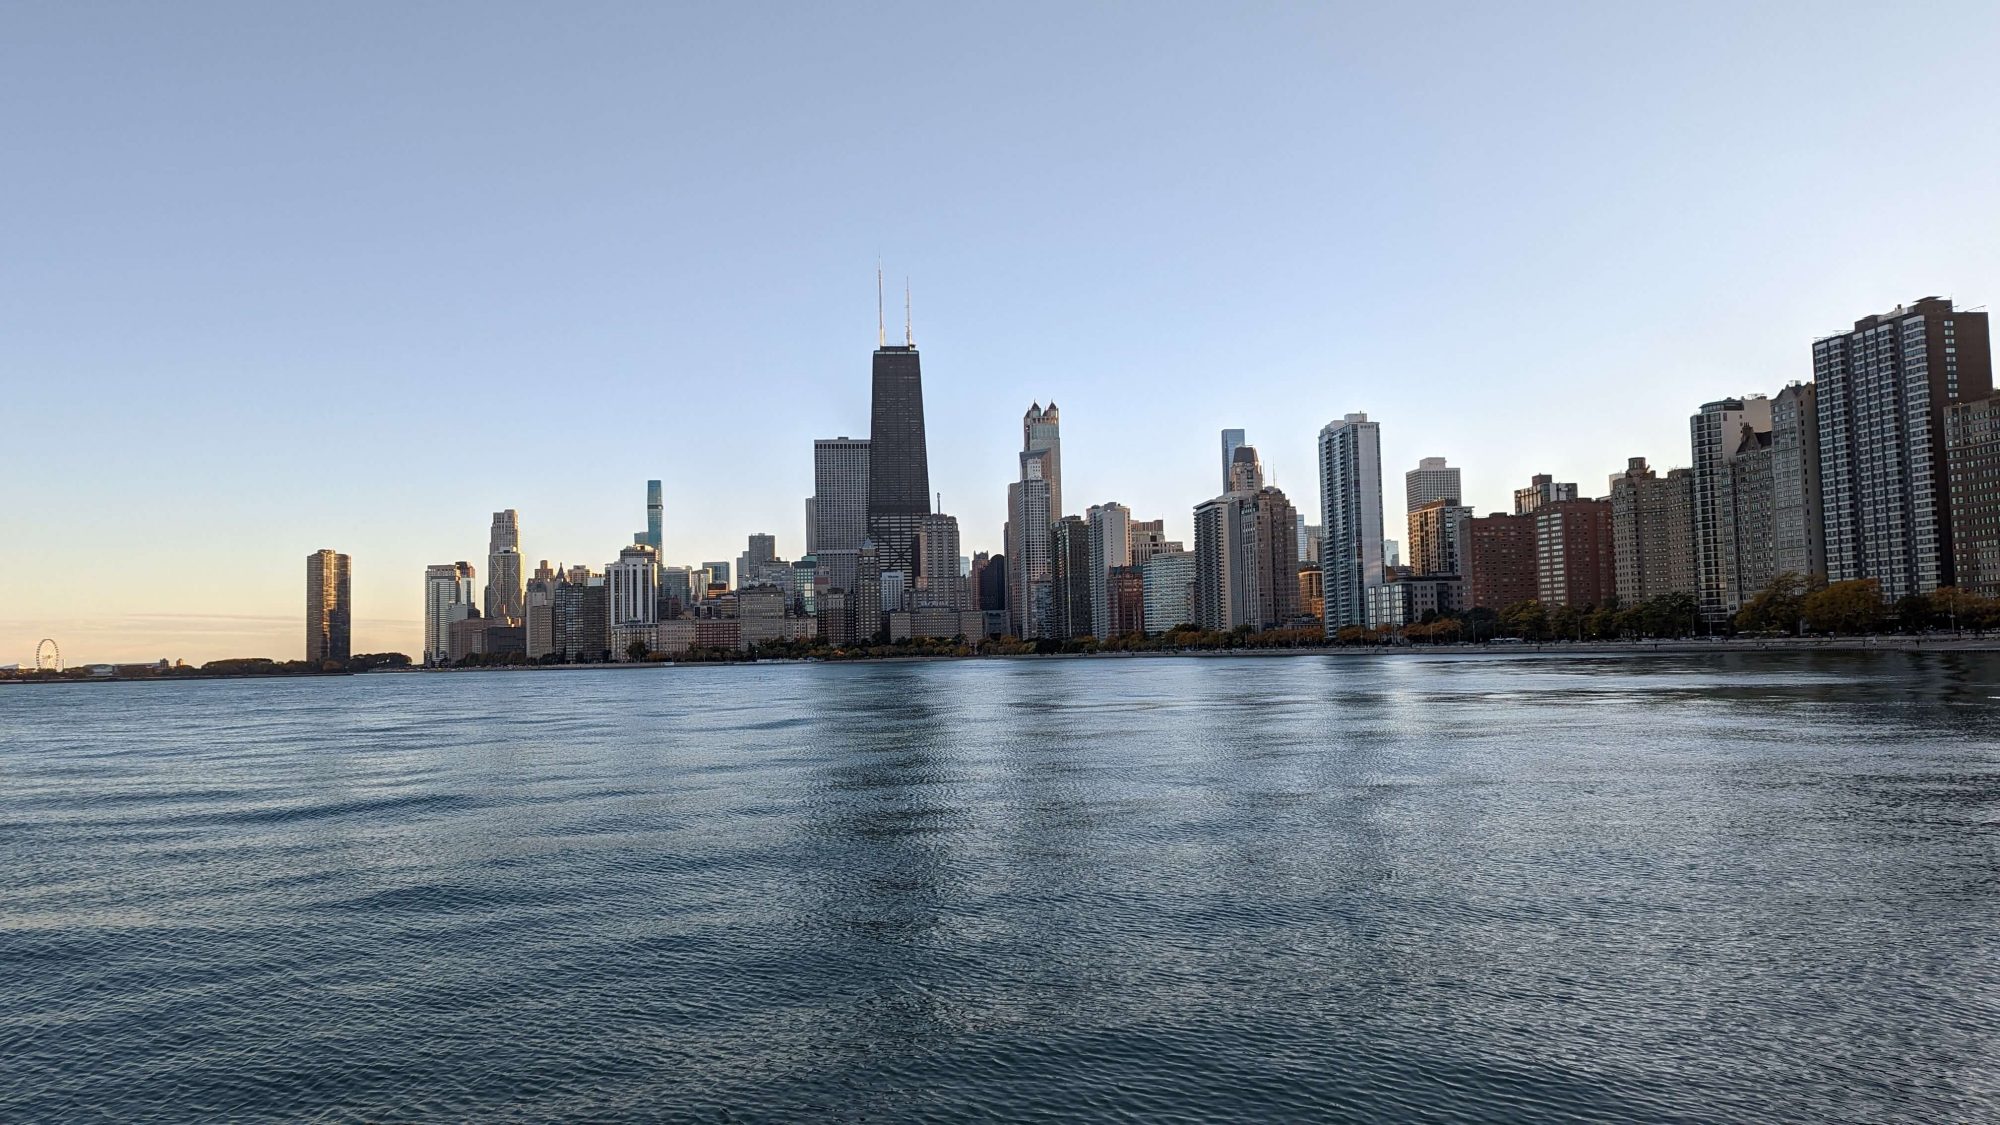 Grandioser Blick auf die Skyline von Chicago am Lake Michigan - einem der fünf großen Seen